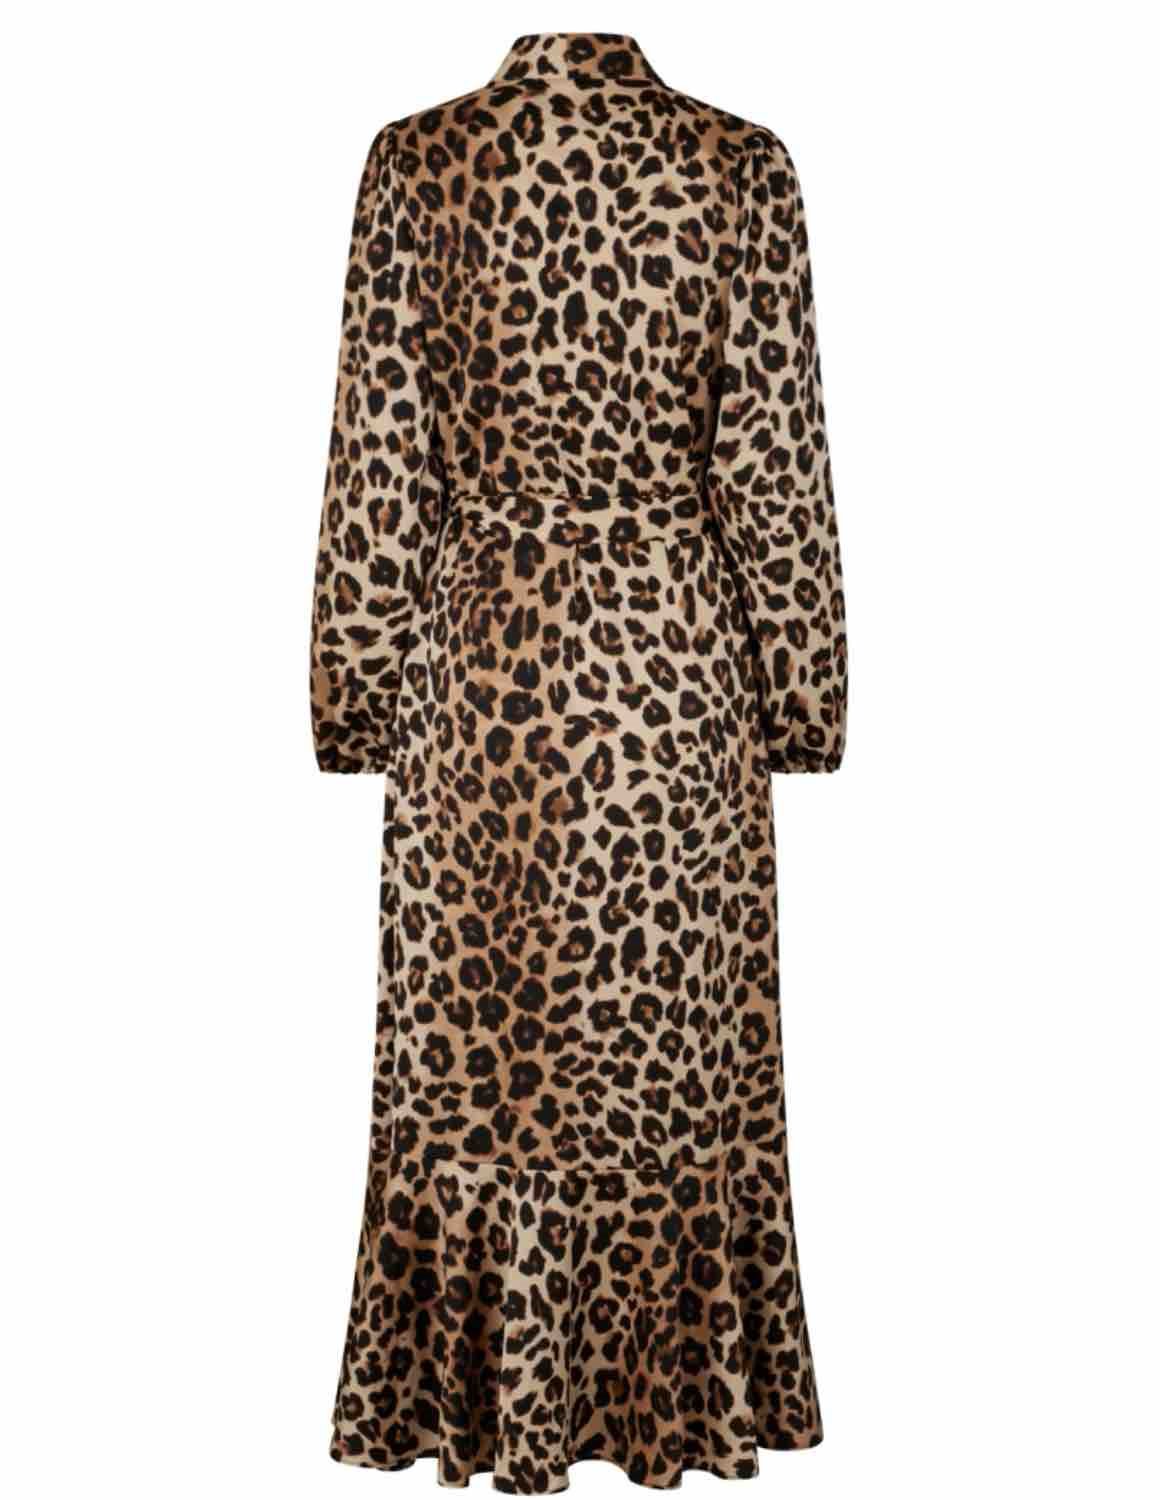 Cras Laracras Dress - Recycled Polyester Leopard Print Dress